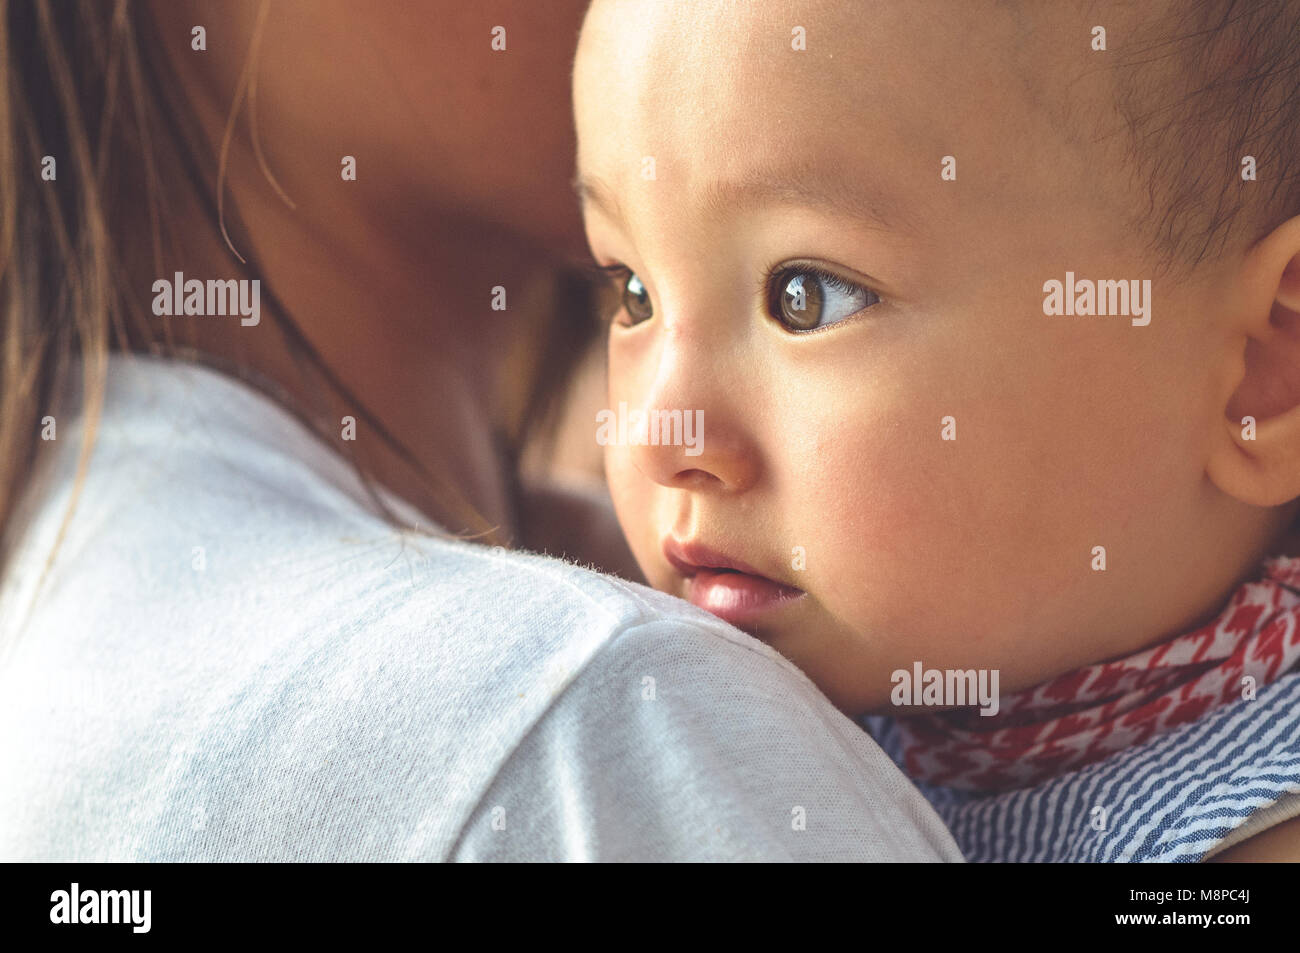 Cute Asian baby face dans les bras de sa mère Banque D'Images